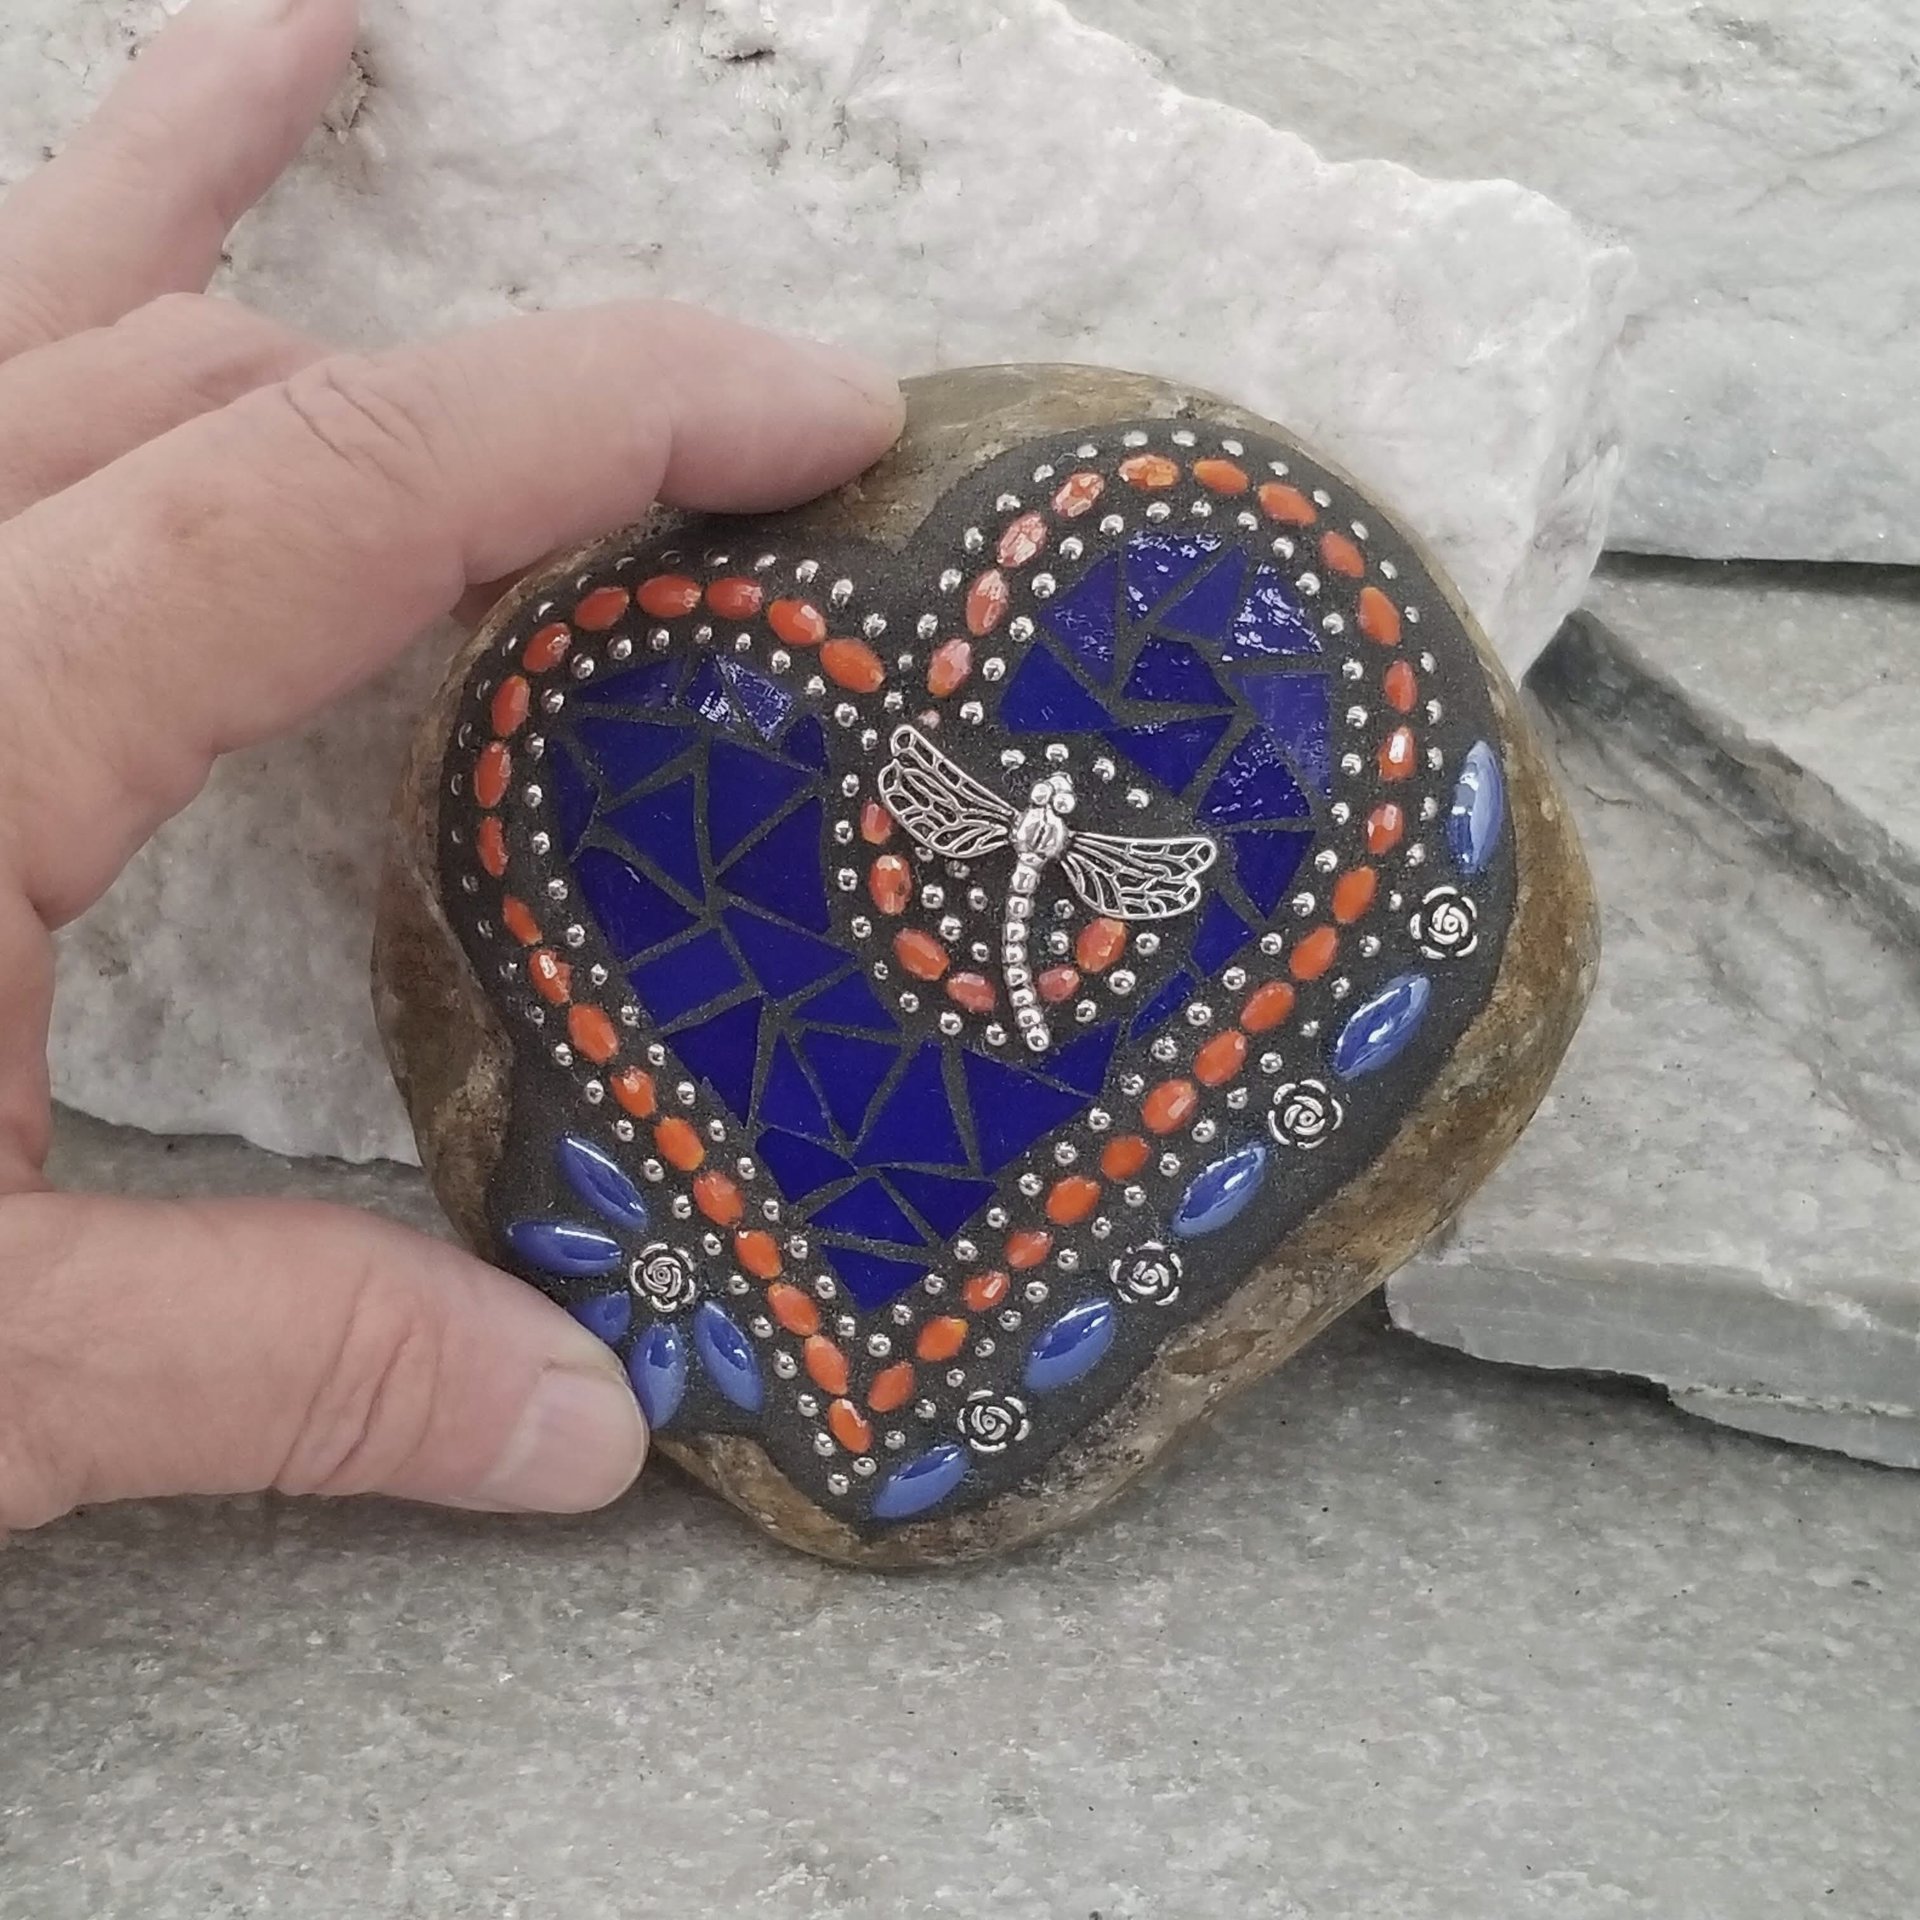 Royal Blue Heart, Garden Stone, Mosaic, Garden Decor